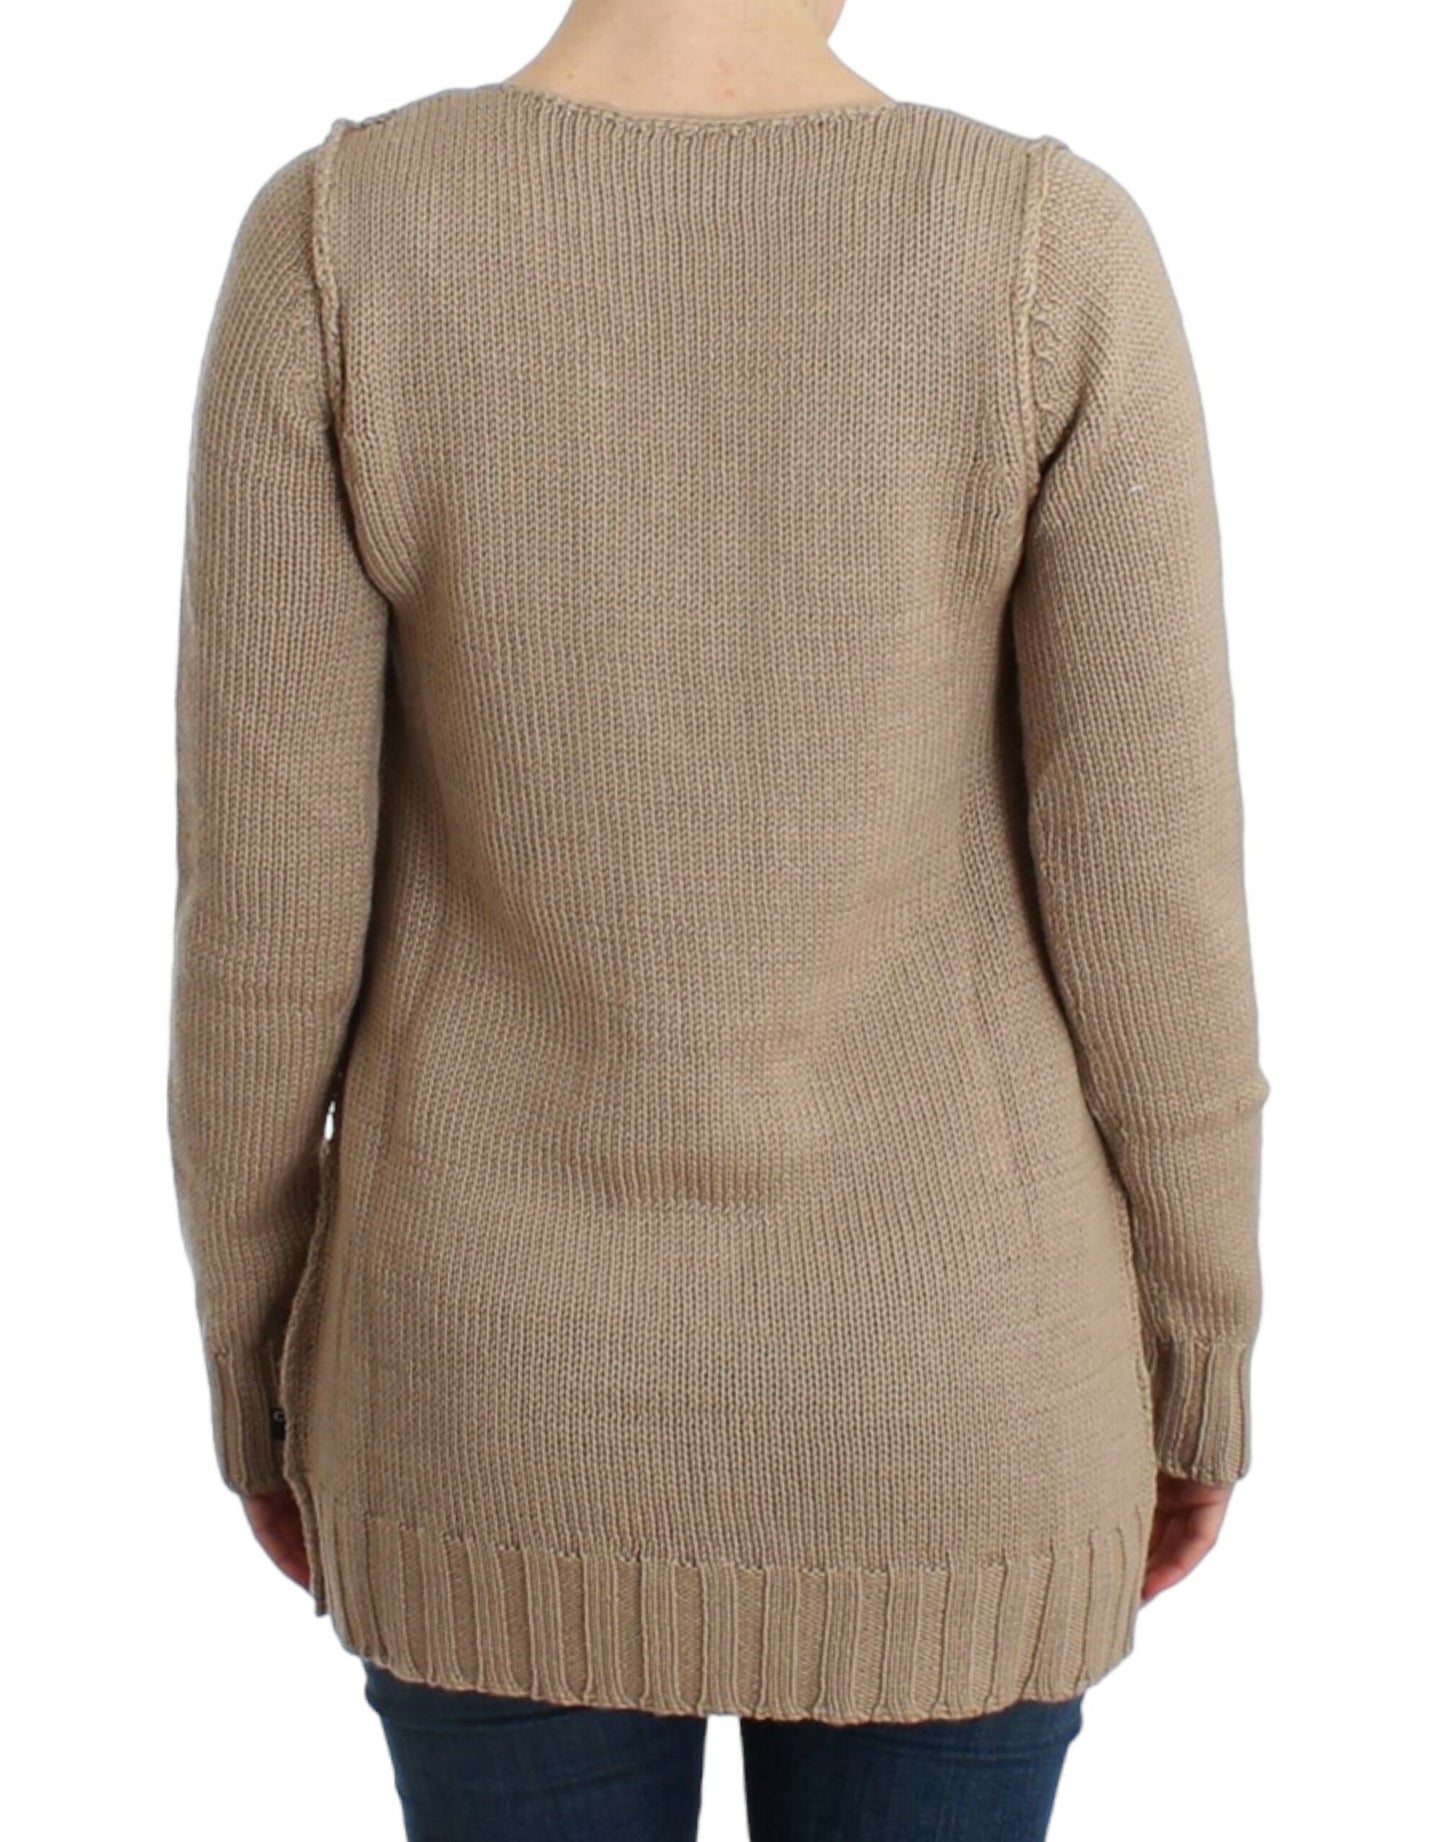 Beige knitted wool sweater